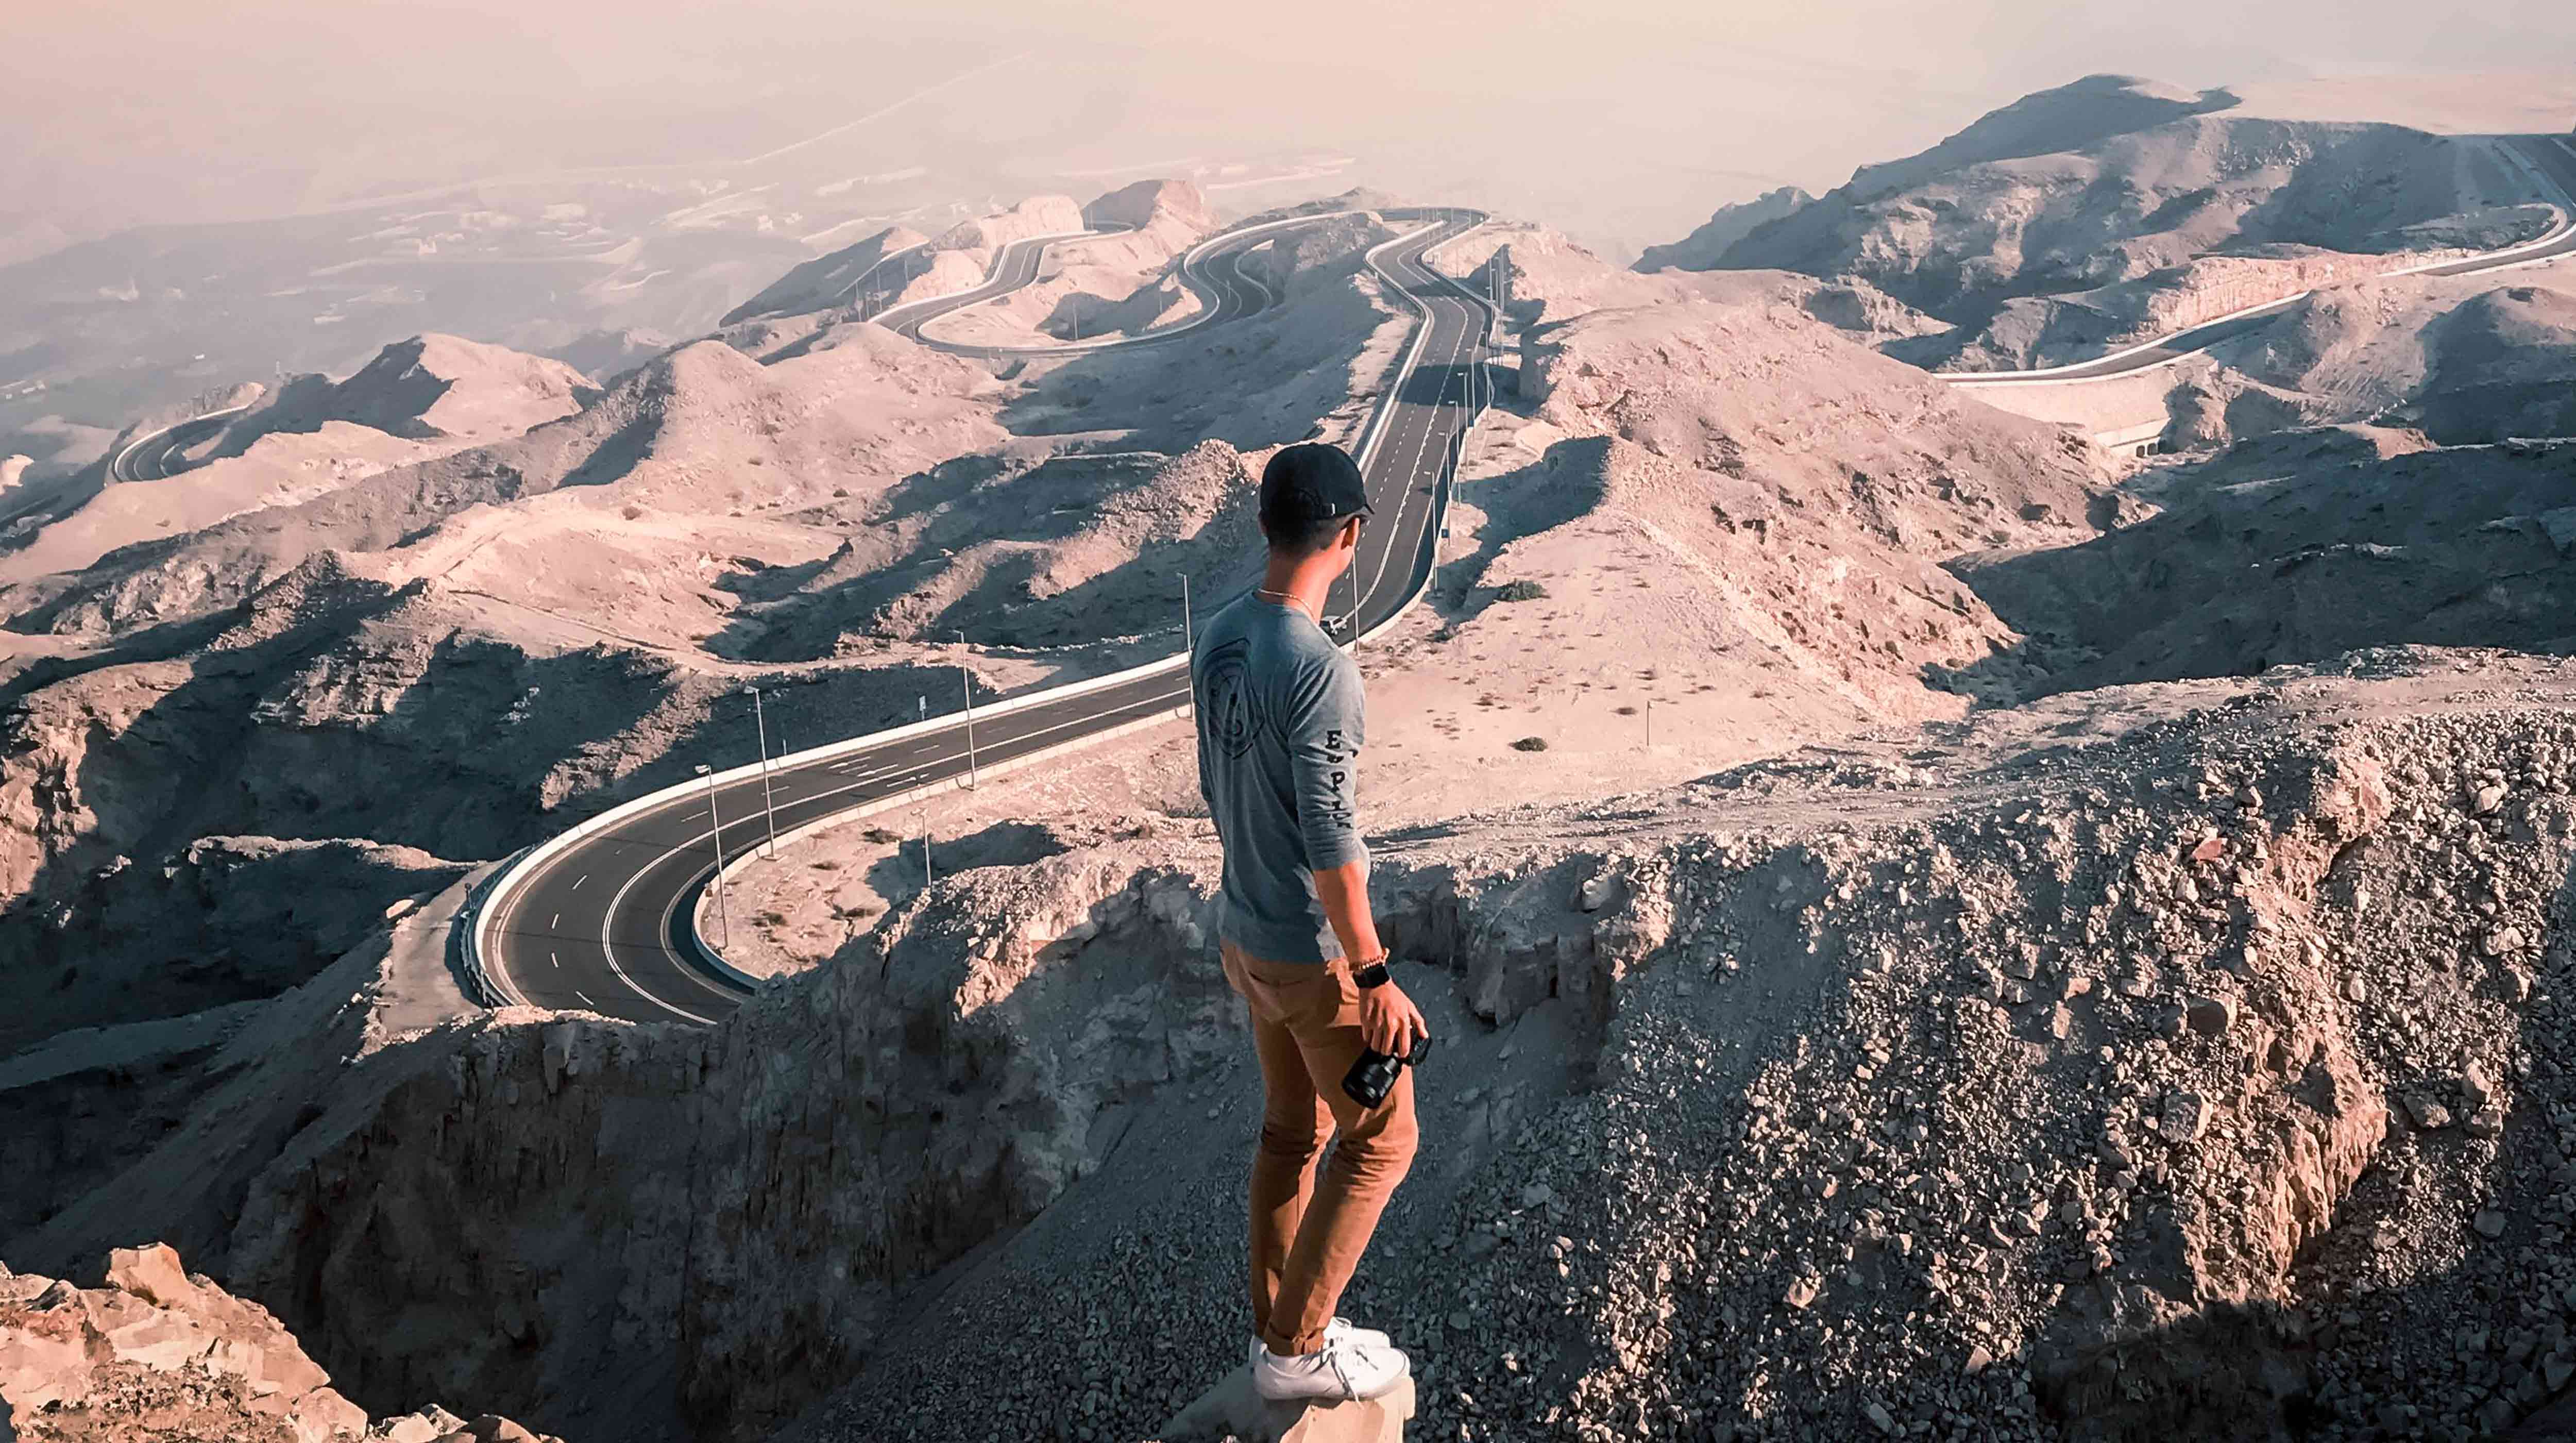 ג'אבל חפית – Jebel Hafit